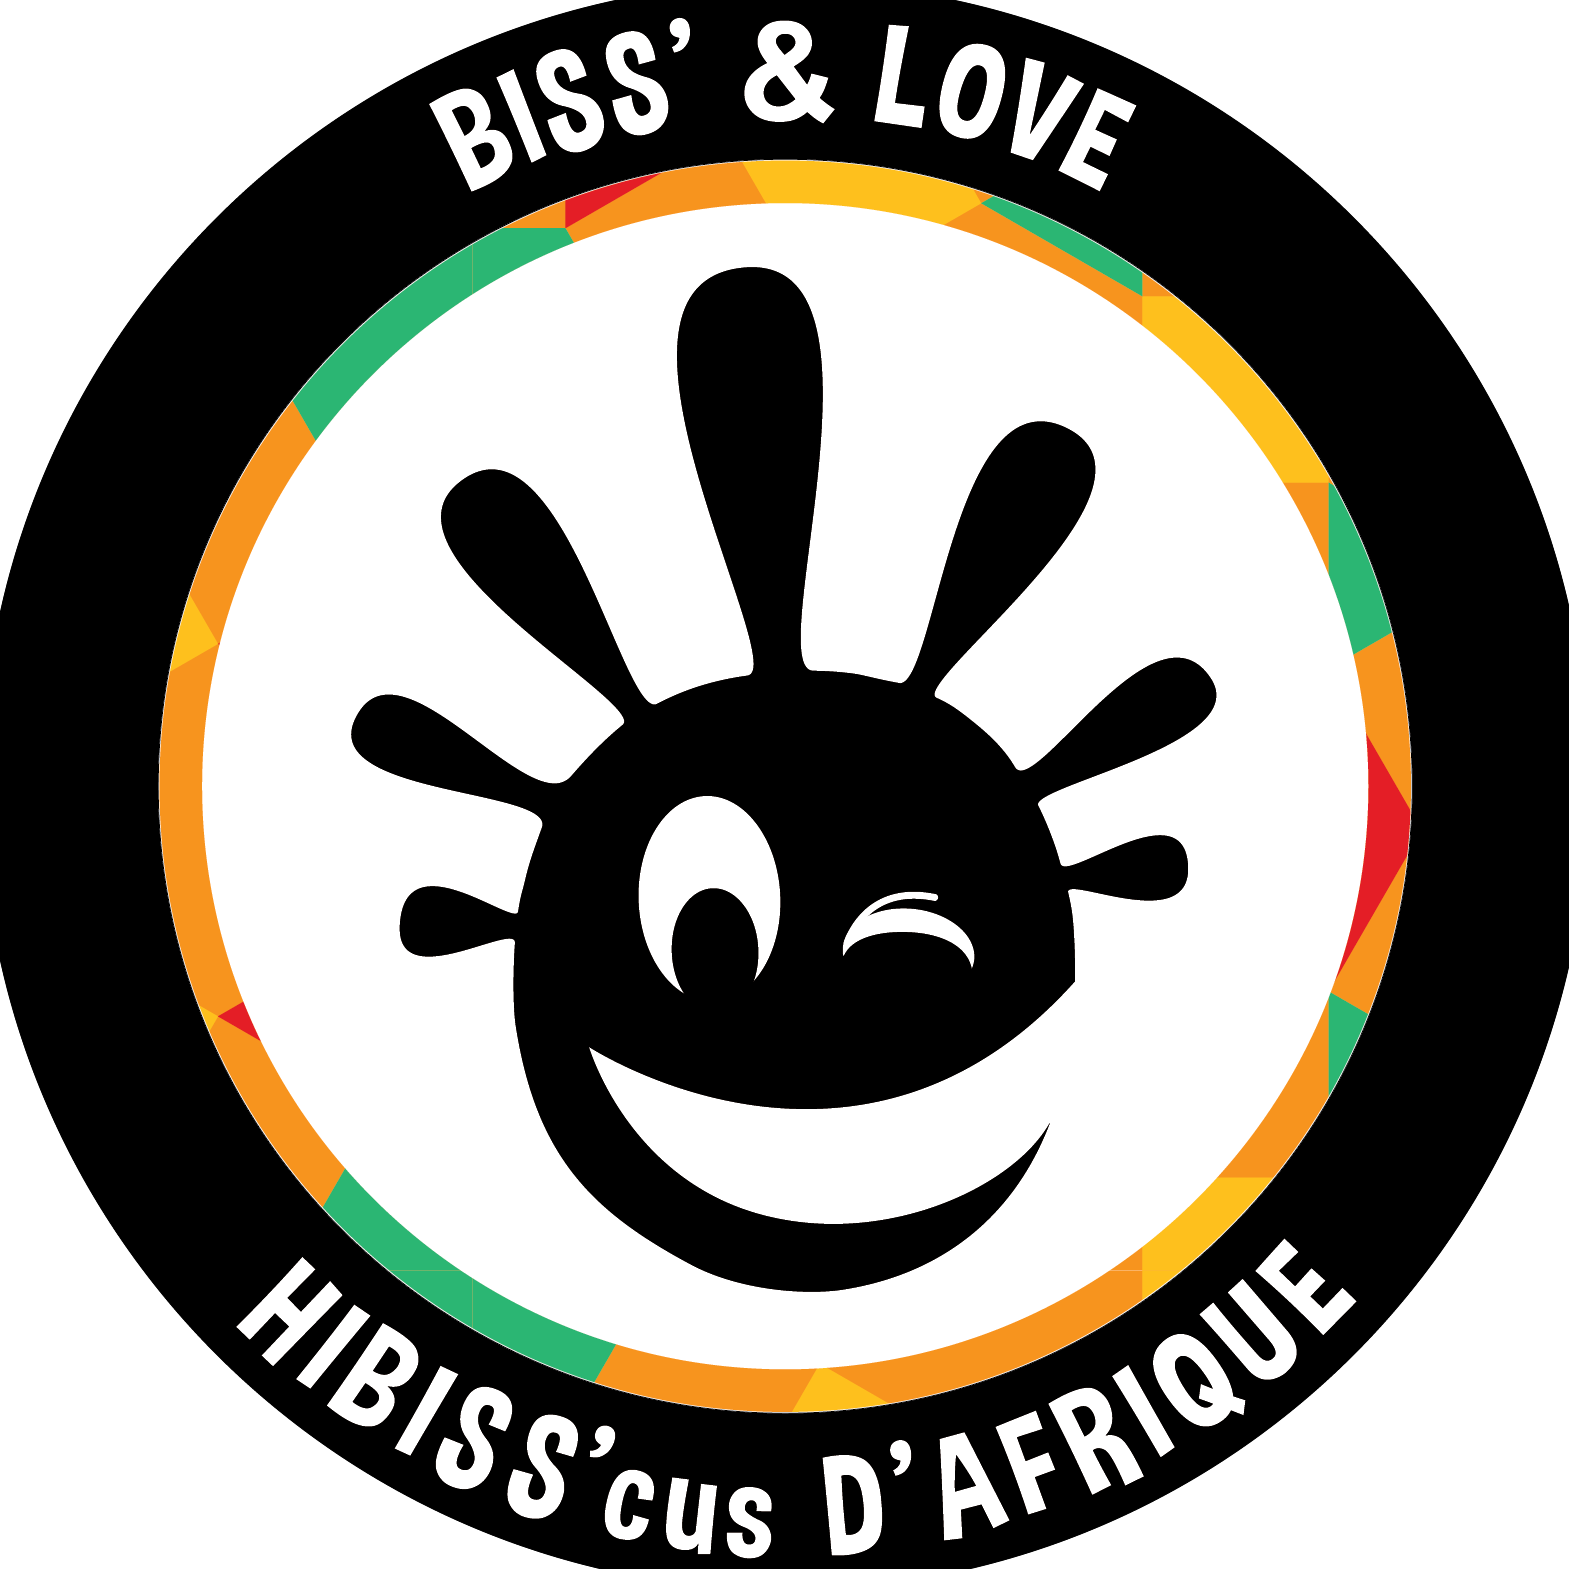 Biss'tributeur de bonne humeur Africaine depuis Août 2013.
Biss' & Love :). HastaLaBiss'ta. Le Biss'ness de l'hiBiss'cus